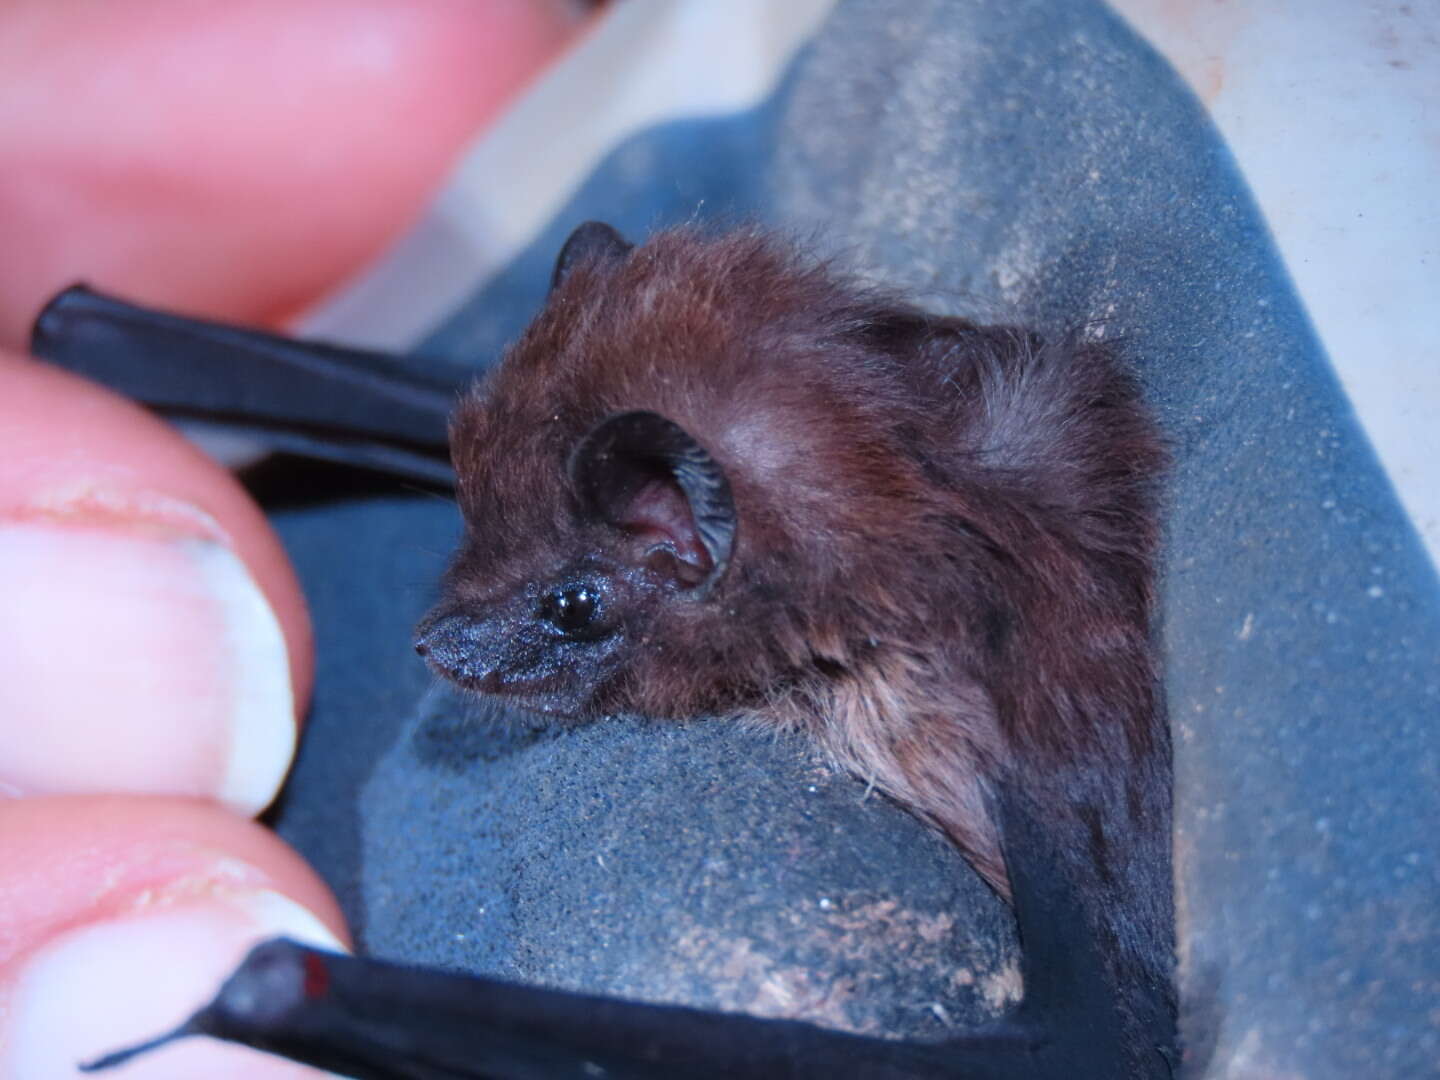 Image of Philippine Sheath-tailed Bat